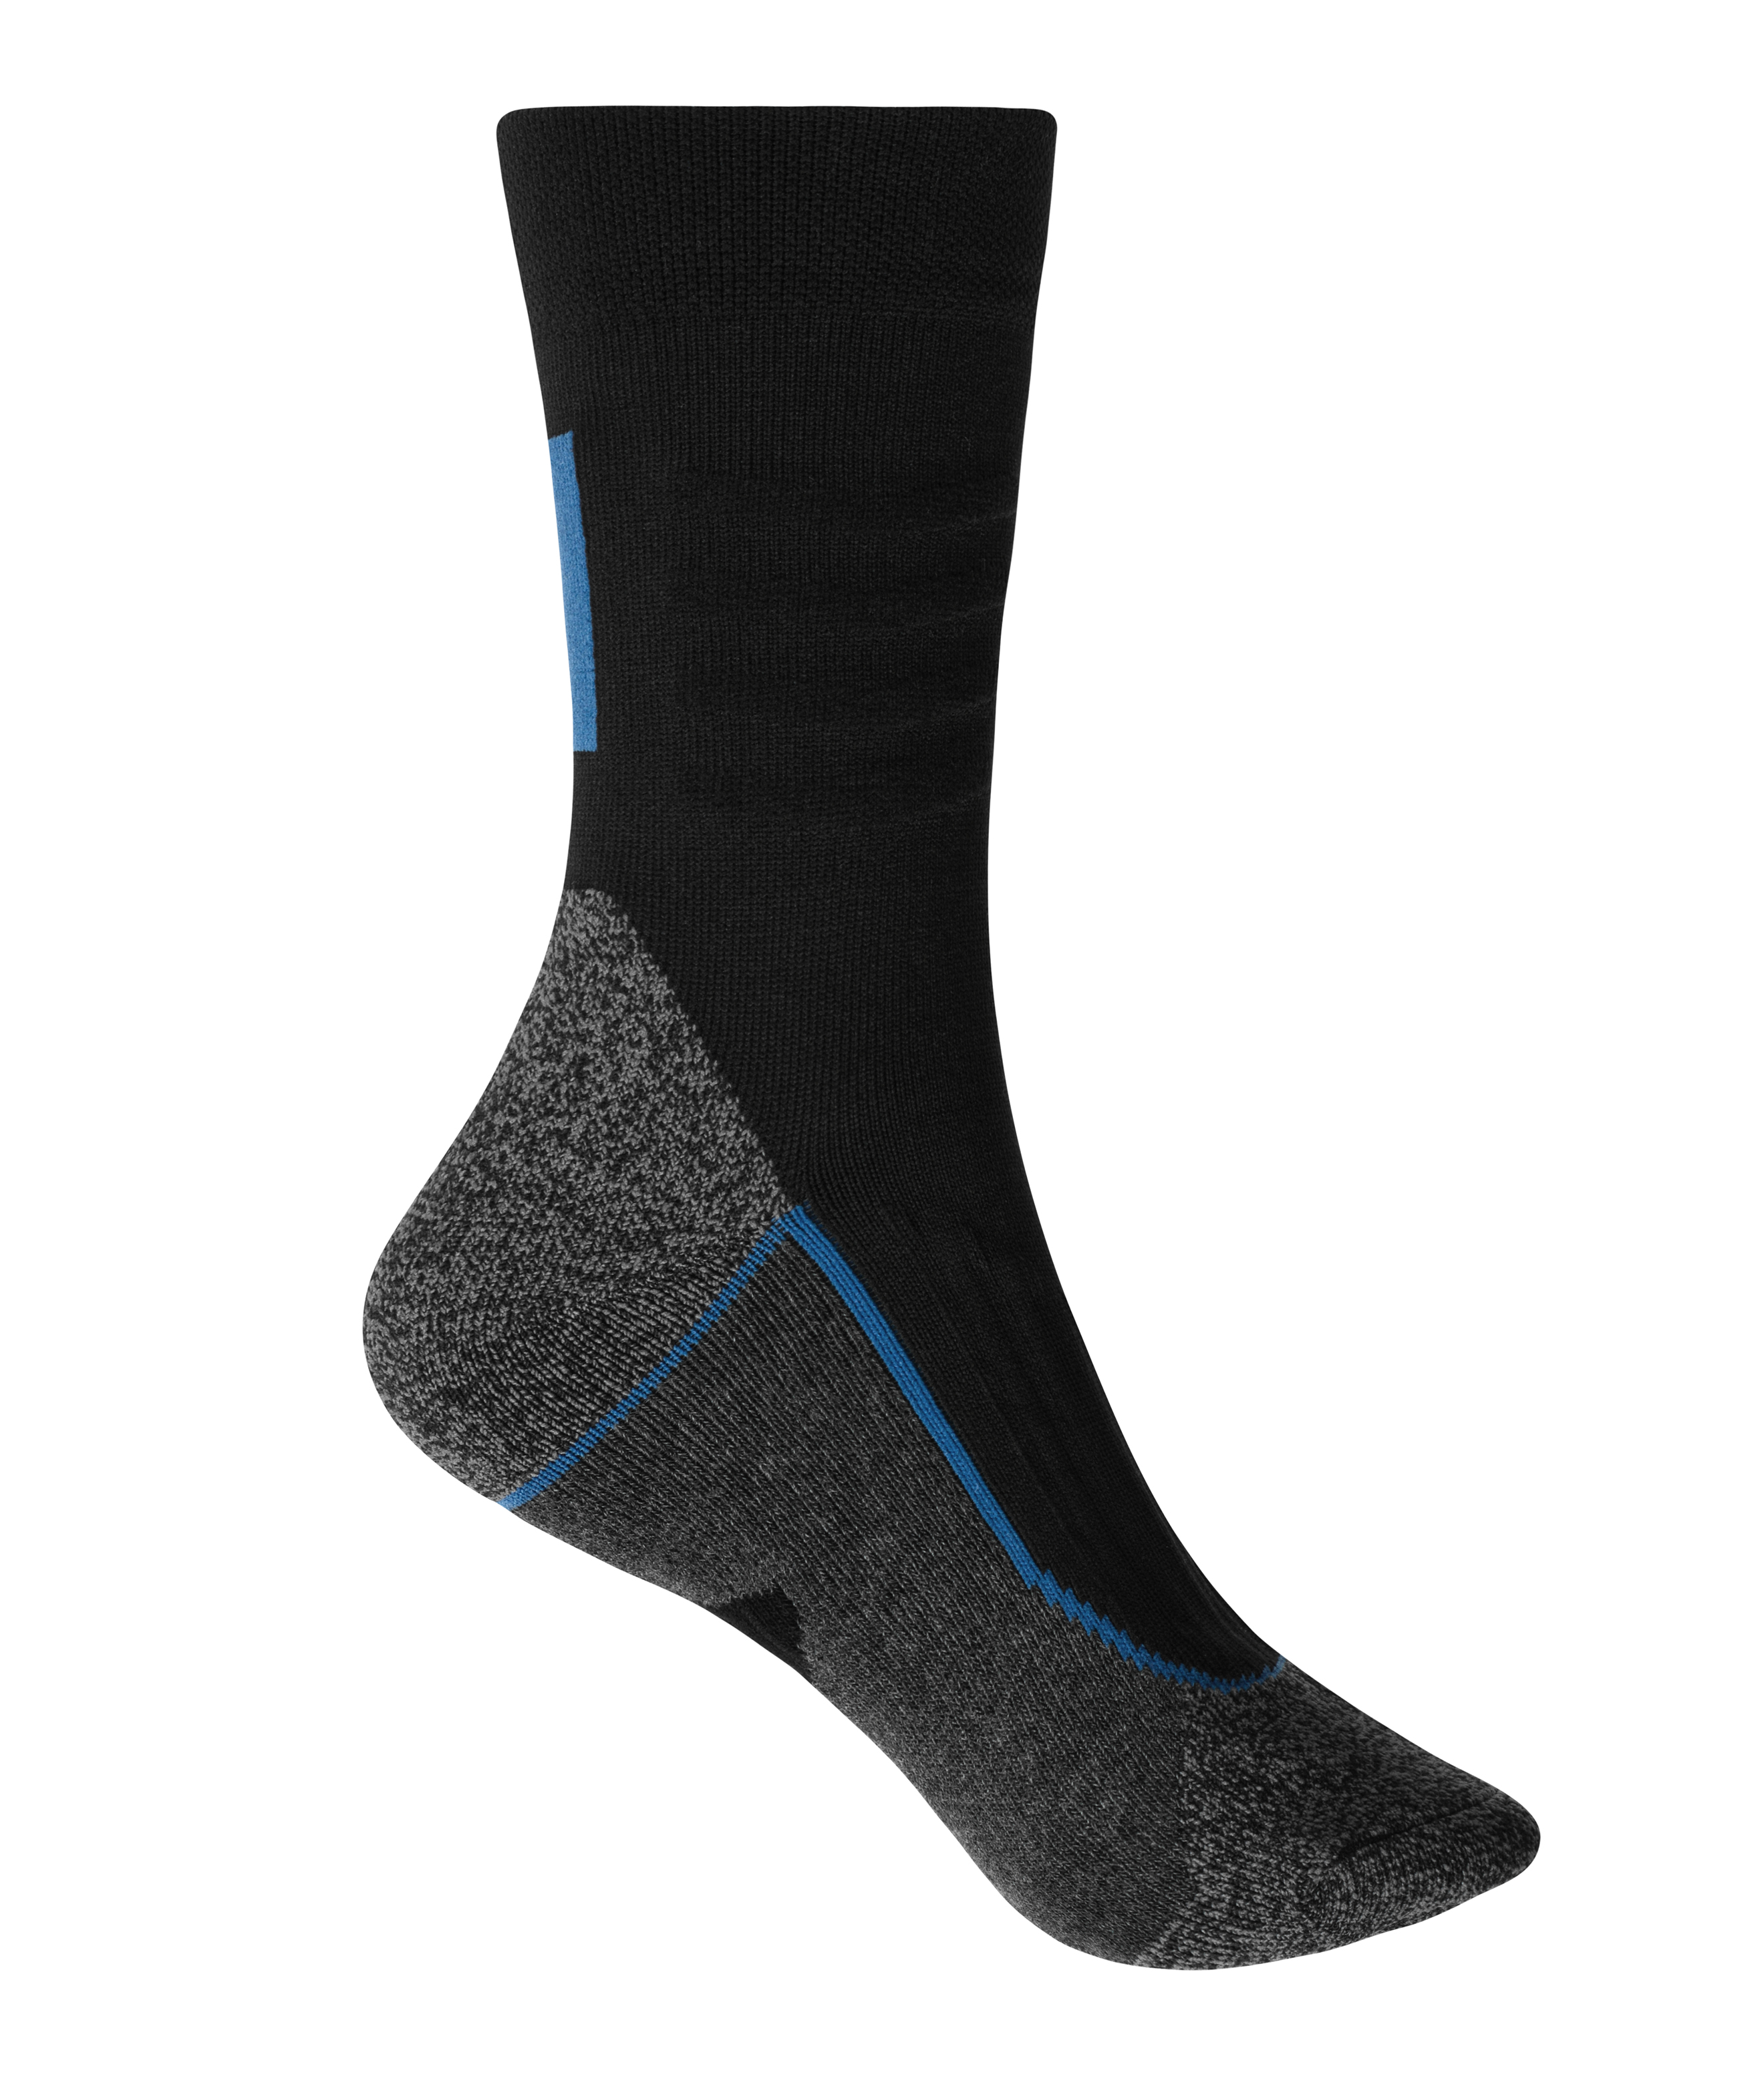 Worker Socks Cool JN212 Funktionelle Socke für Damen und Herren